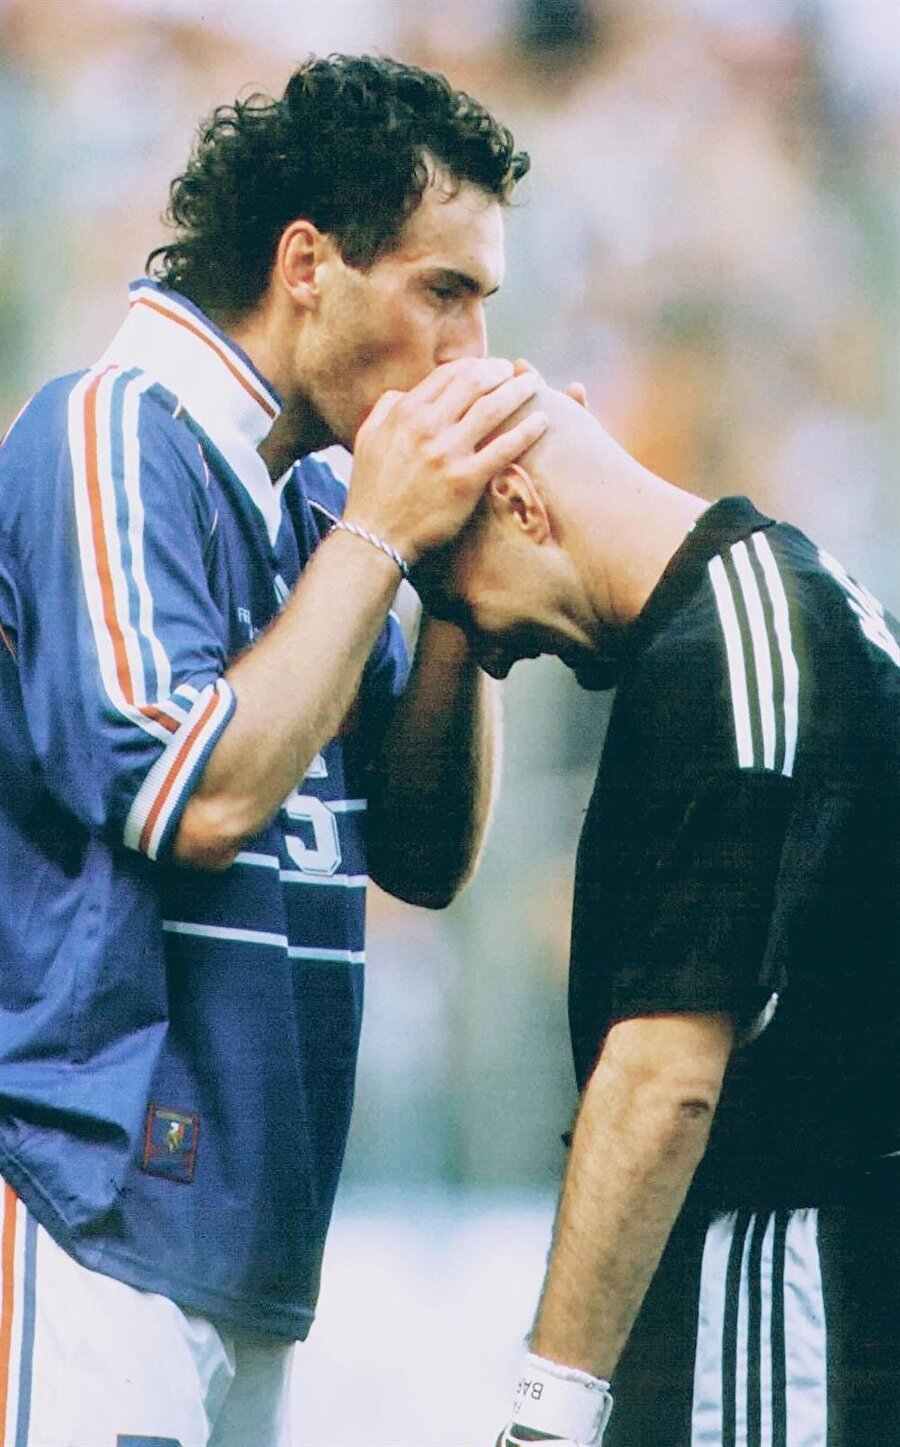 Laurent Blanc 
1998 Dünya Kupası finalinde Brezilya ile Fransa karşı karşıya geldi. Fransa'nın önemli isimlerinden Laurent Blanc kart cezası nedeniyle final karşılaşmasında forma giyemedi. Maçı Brezilya'yı 3-0 mağlup eden Fransa kazandı ve tarihinde ilk kez bu kupayı müzesine götürmeyi başardı.